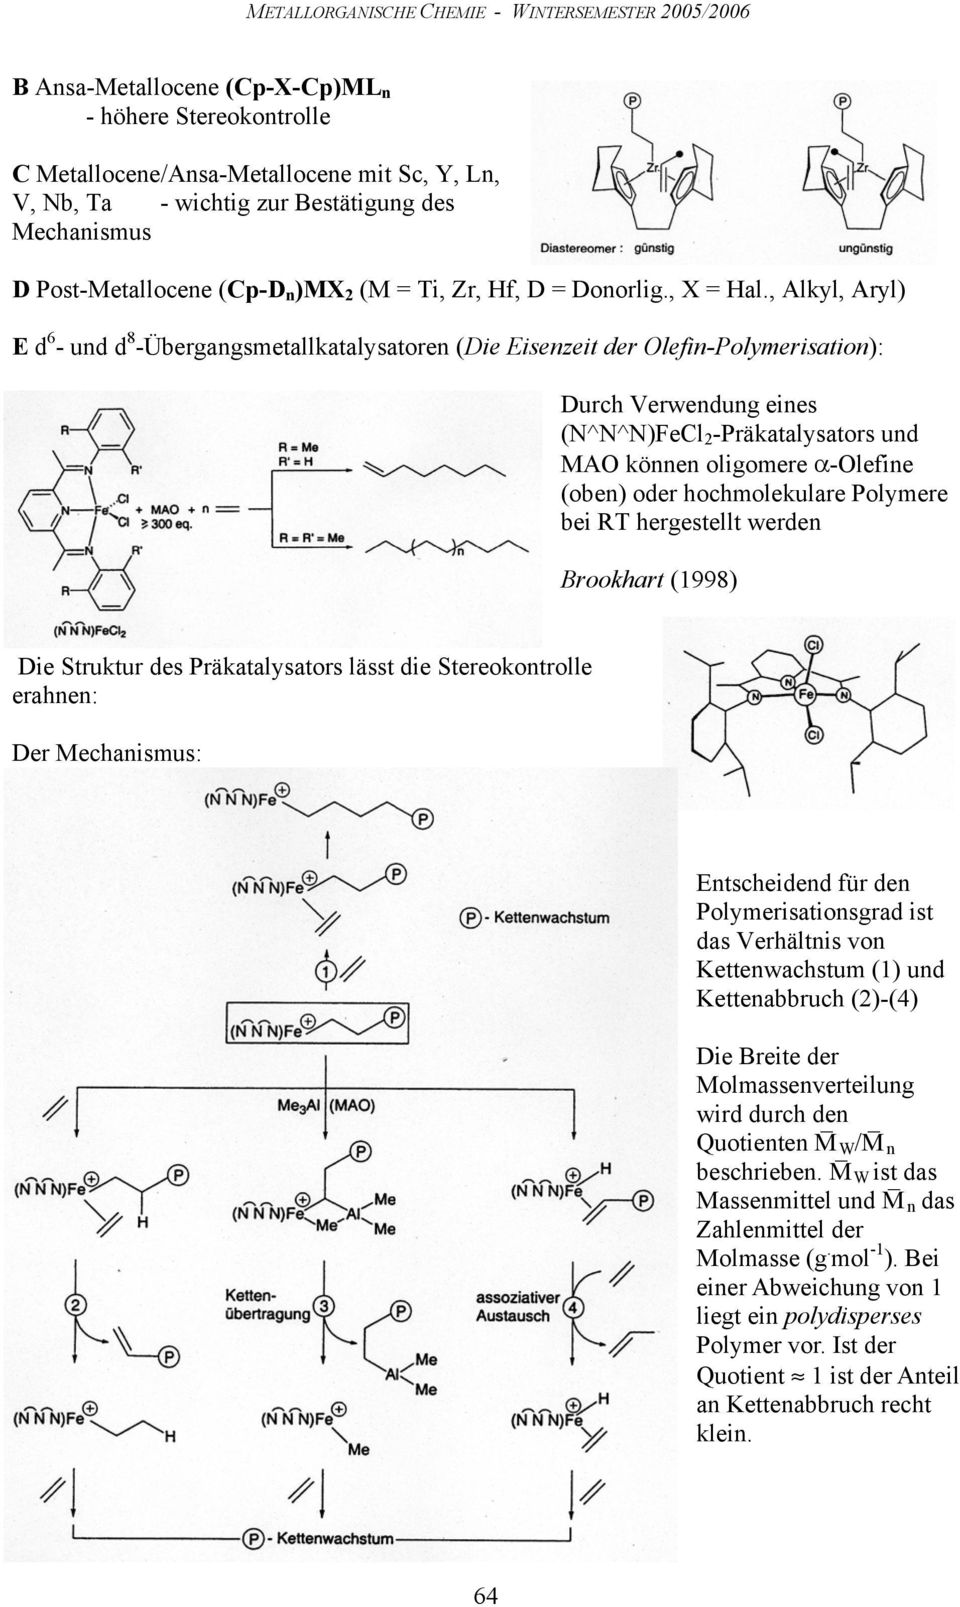 , Alkyl, Aryl) E d 6 - ud d 8 -Übergagsmetallkatalysatore (Die Eisezeit der lefi-polymerisatio): Durch Verwedug eies (N^N^N)Fe 2 -Präkatalysators ud MA köe oligomere α-lefie (obe) oder hochmolekulare